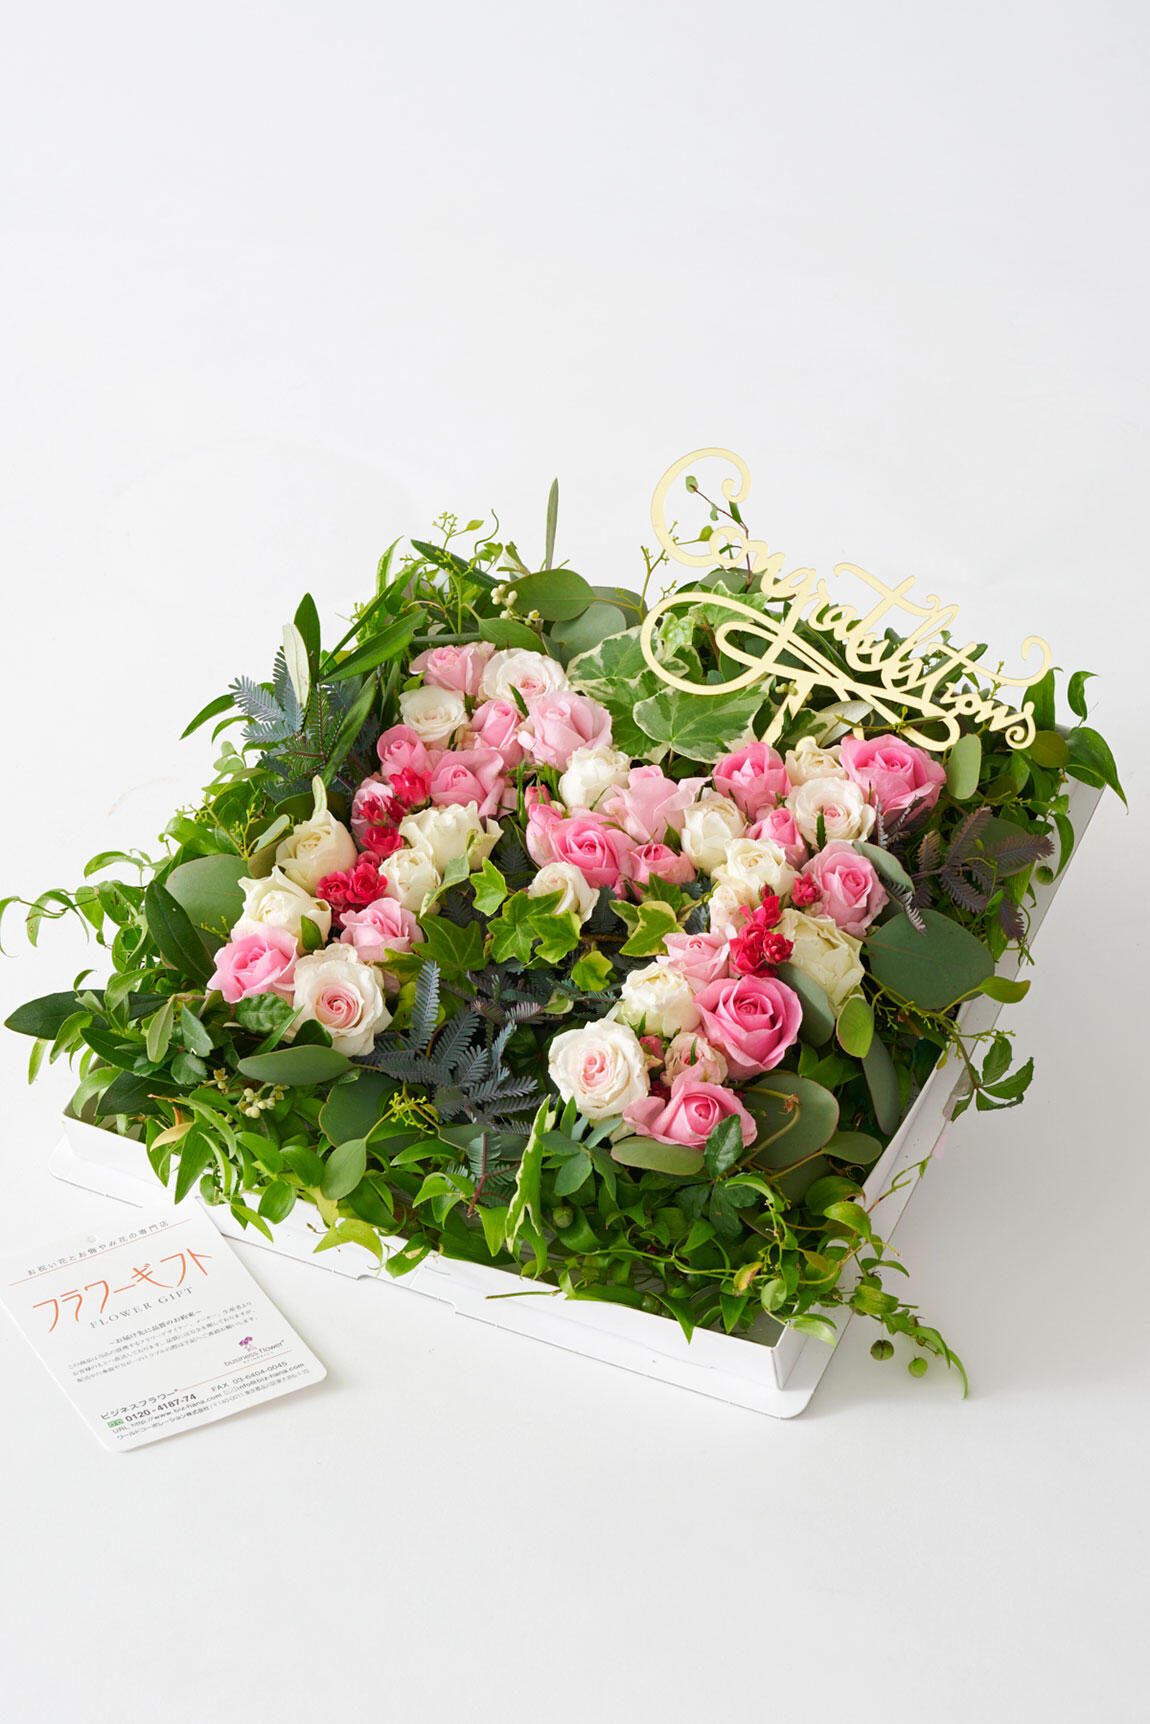 <p>農林水産大臣賞をはじめ、数々の受賞歴がある生産者が育てた薔薇、最高級品質のアレンジメント花を送料無料でお届けします。</p>